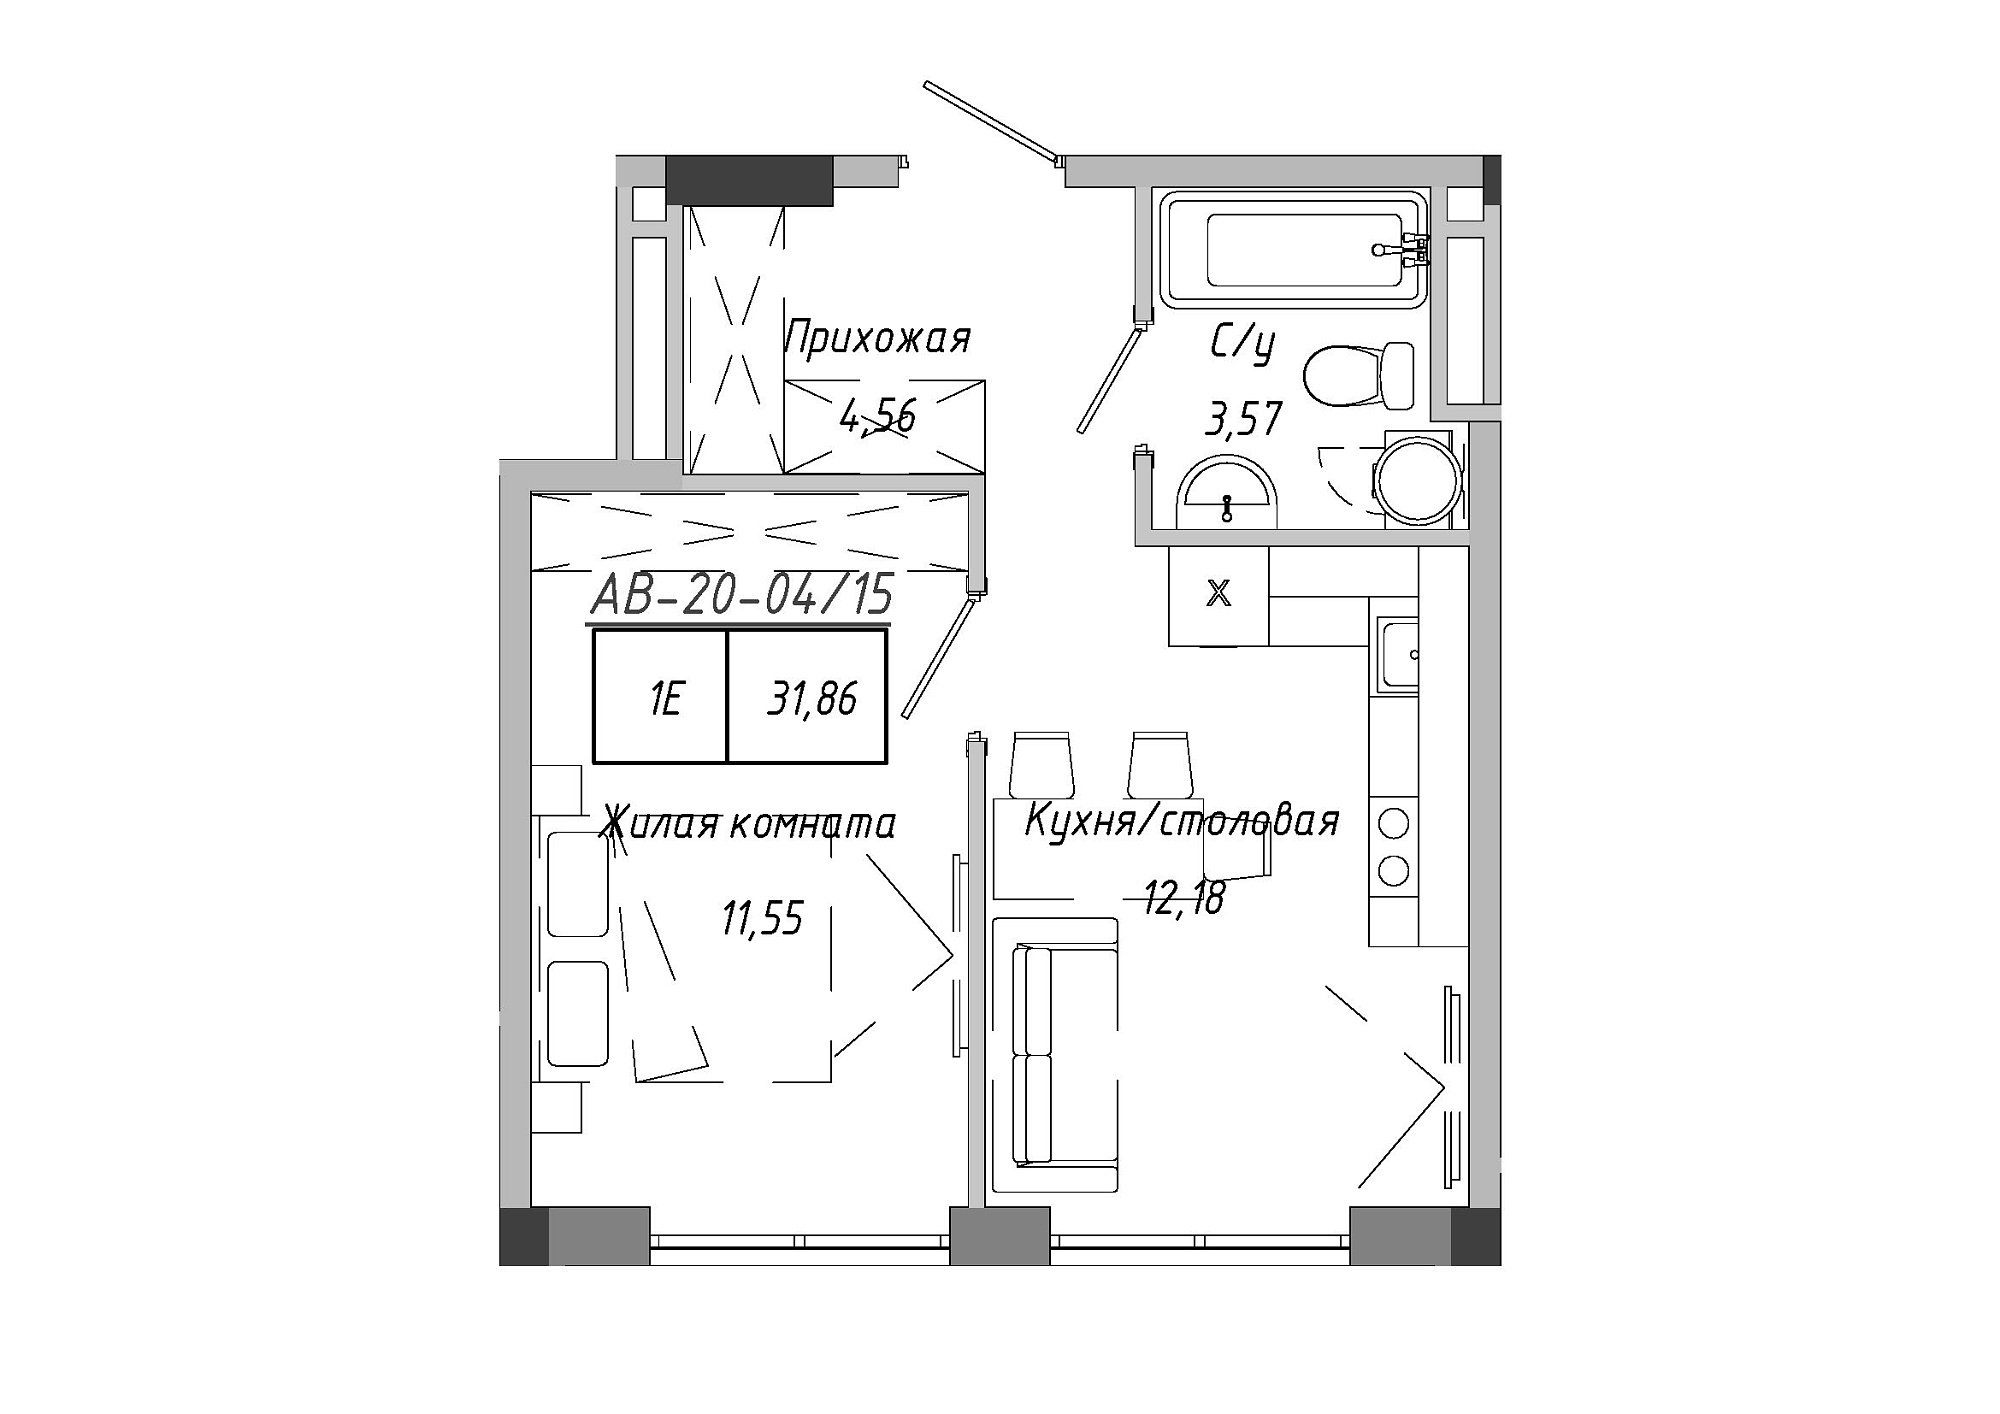 Планування 1-к квартира площею 31.86м2, AB-20-04/00015.